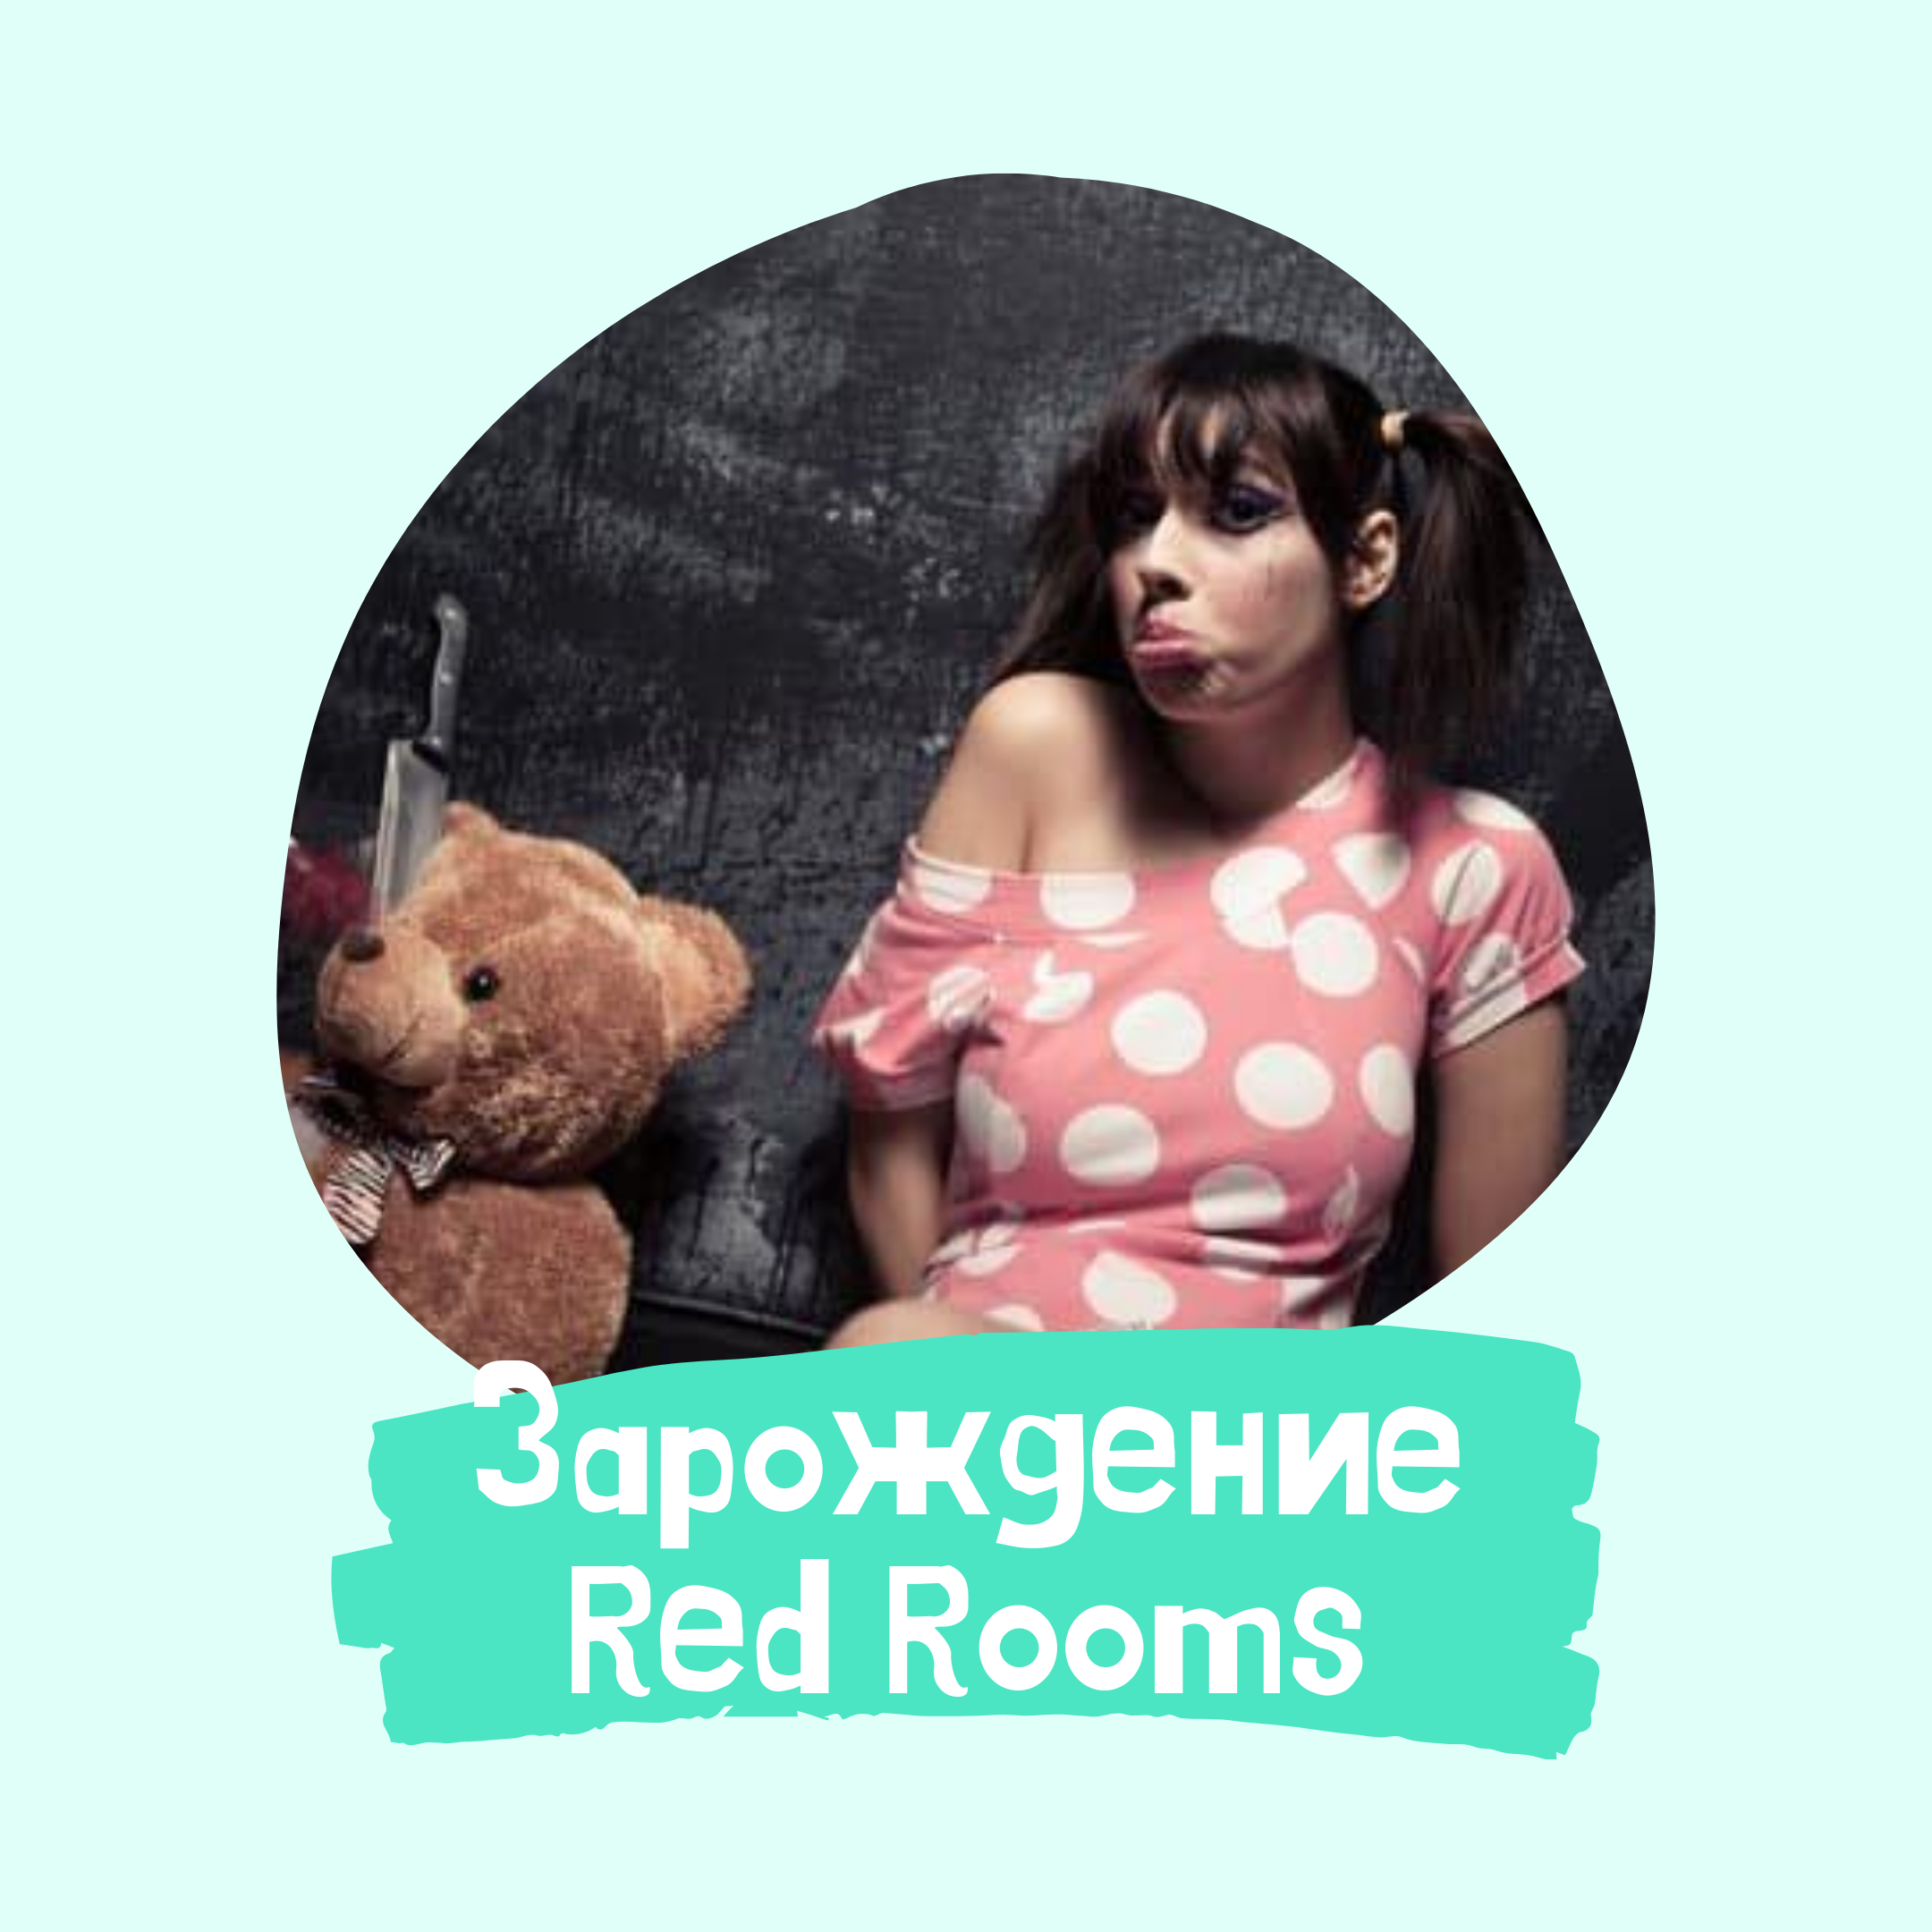 Красная комната даркнет mega скачать последнюю версию тор браузера на русском мега